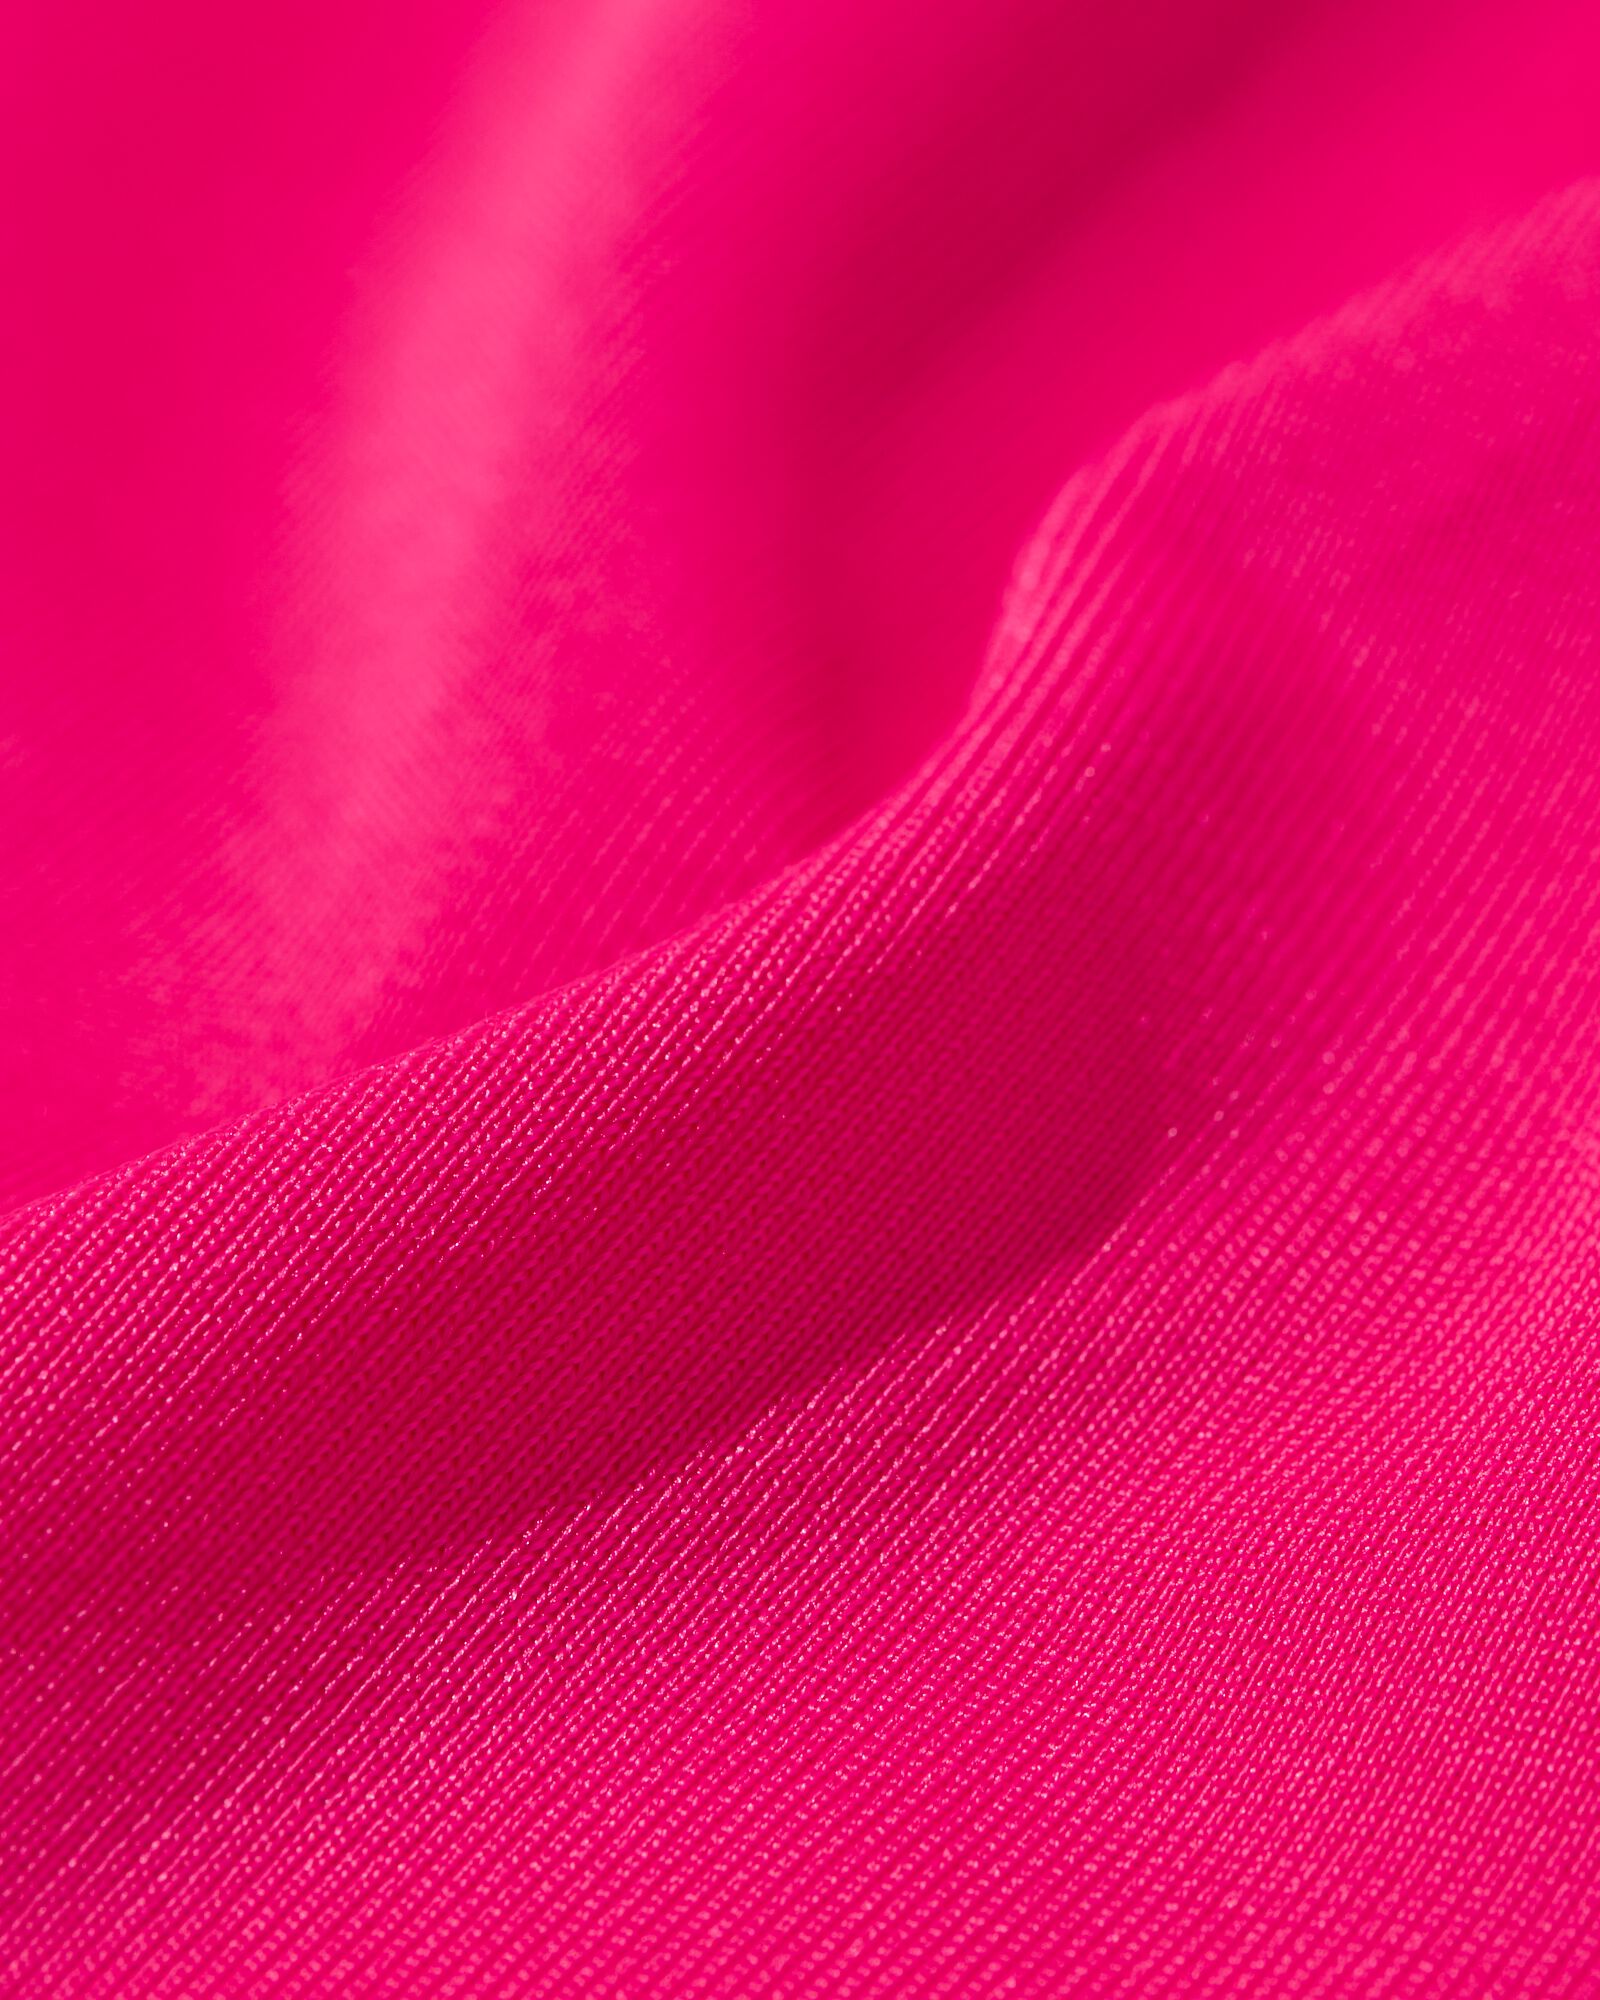 t-shirt de sport femme rose rose - 36030459PINK - HEMA